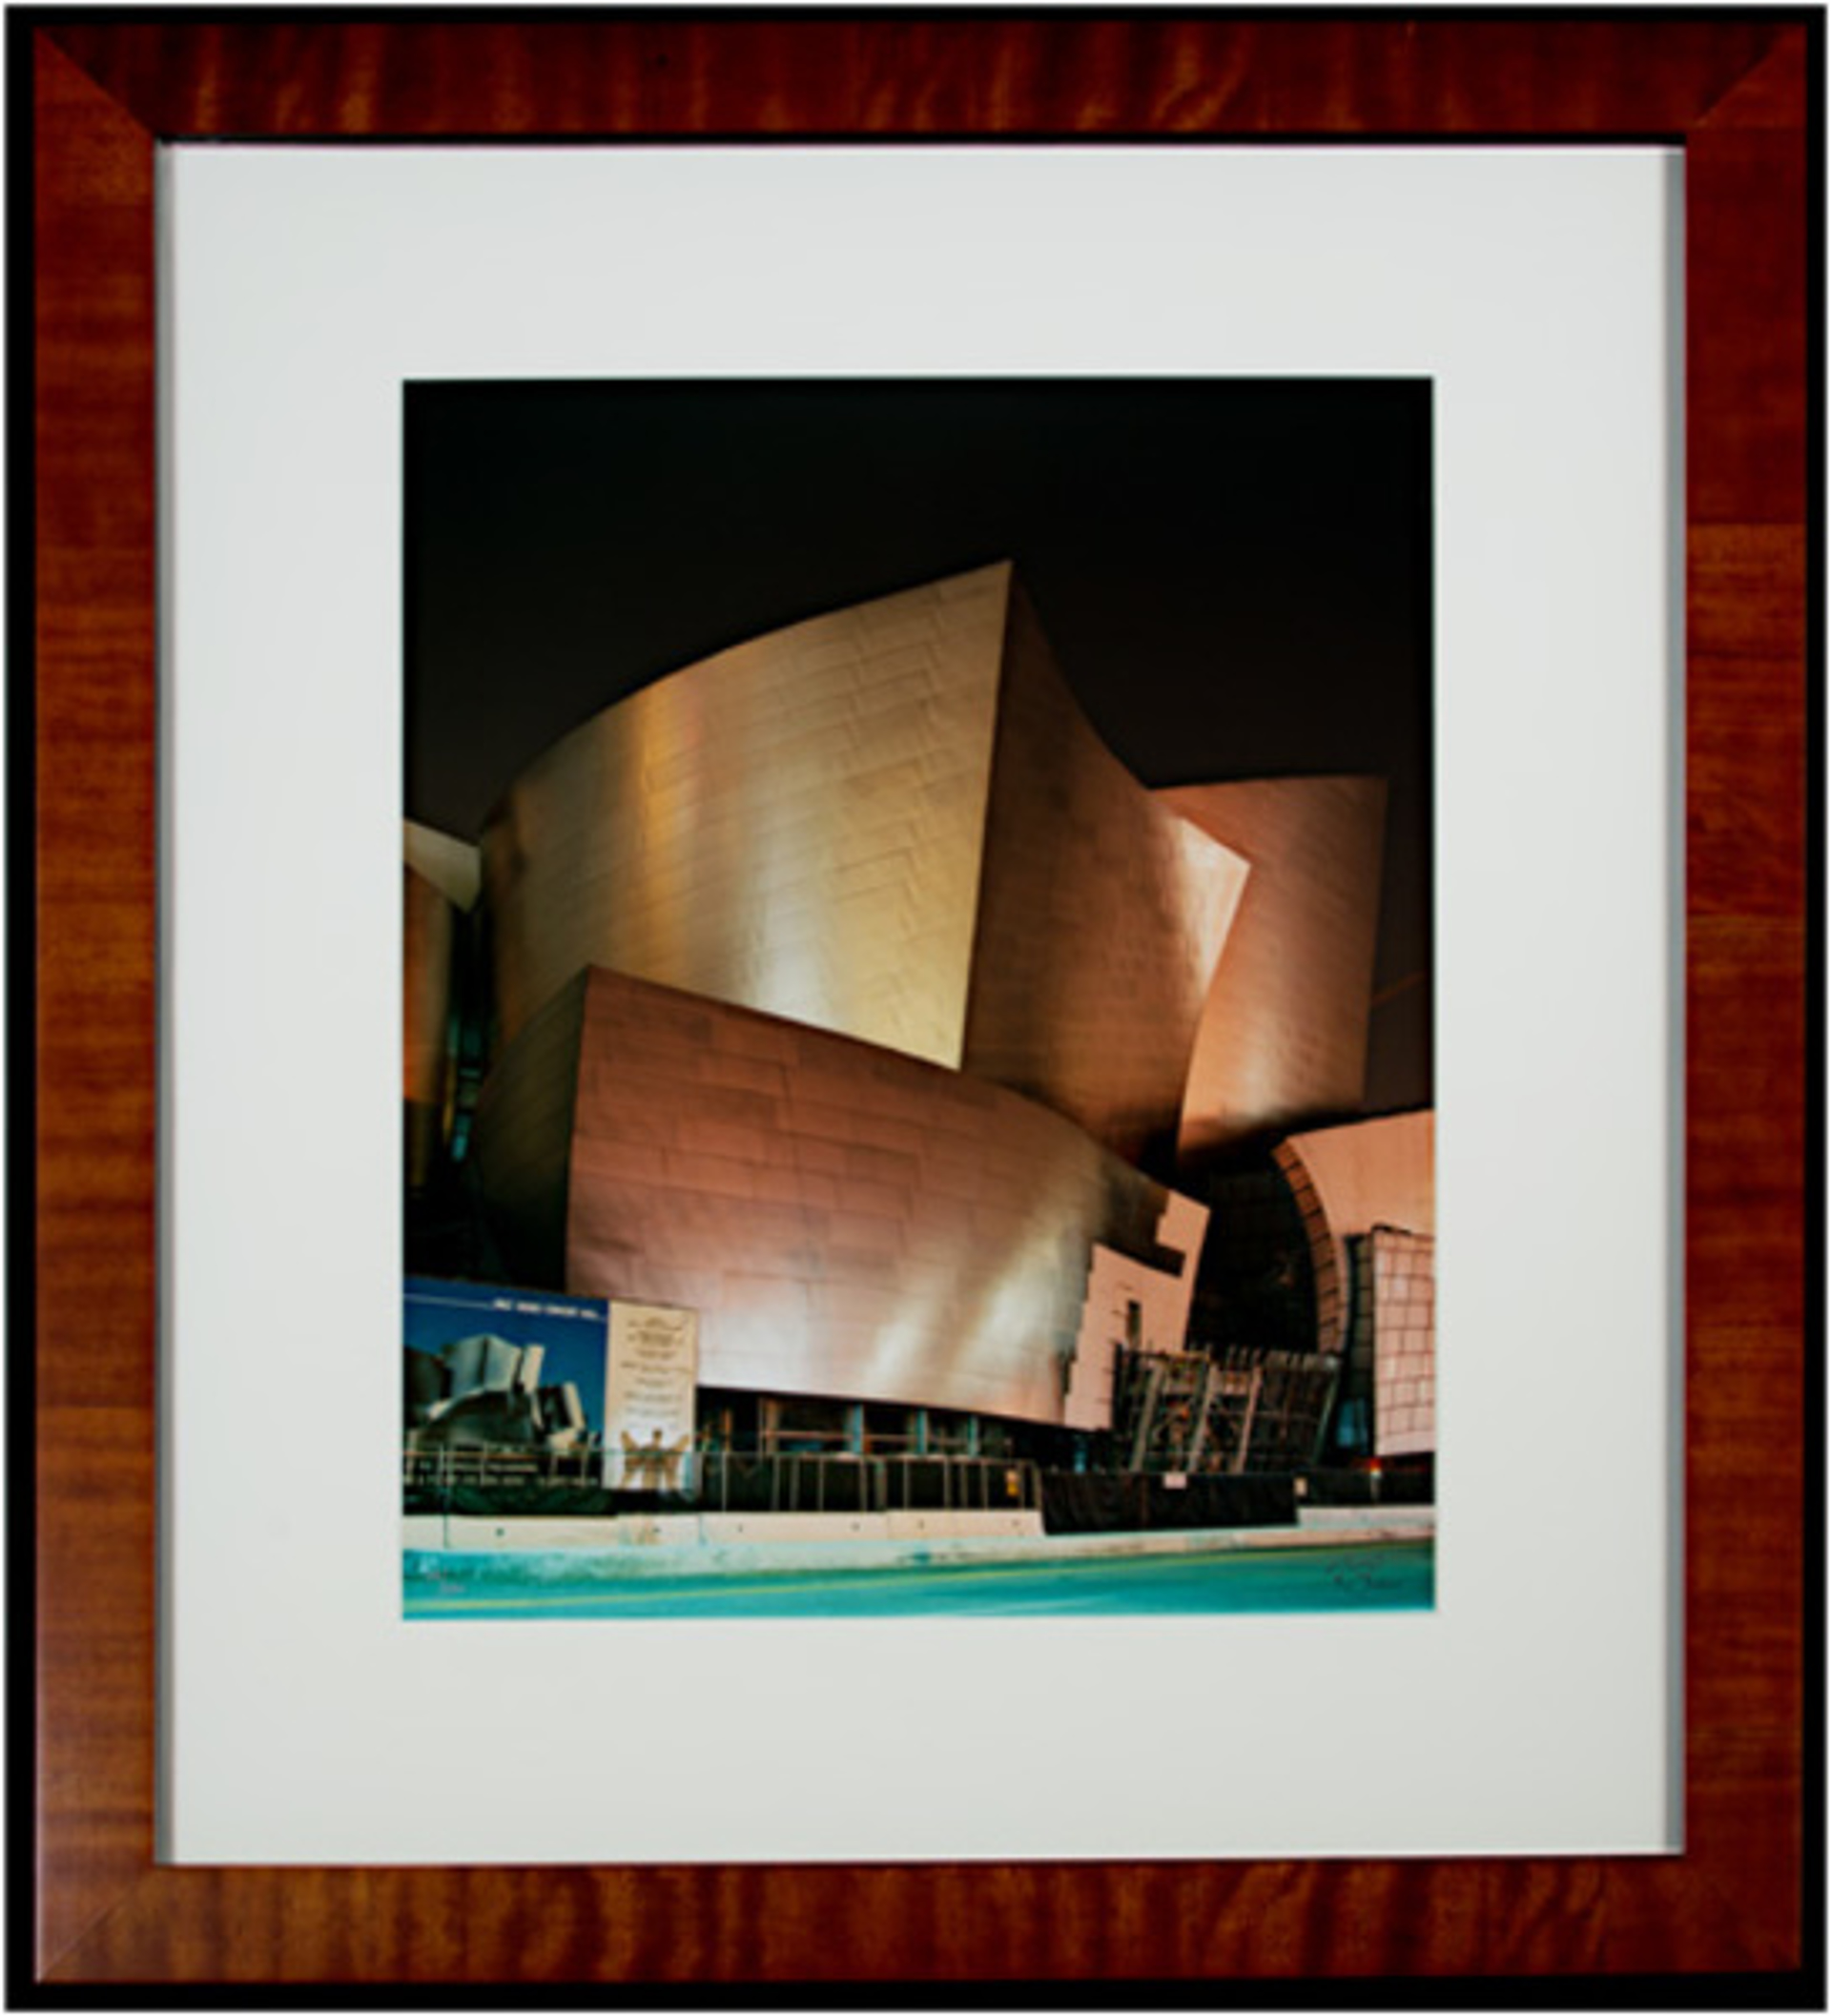 The Herald Angel Prepares to Sing Walt Disney Concert Hall - Los Angeles, CA by Robert Kawika Sheer